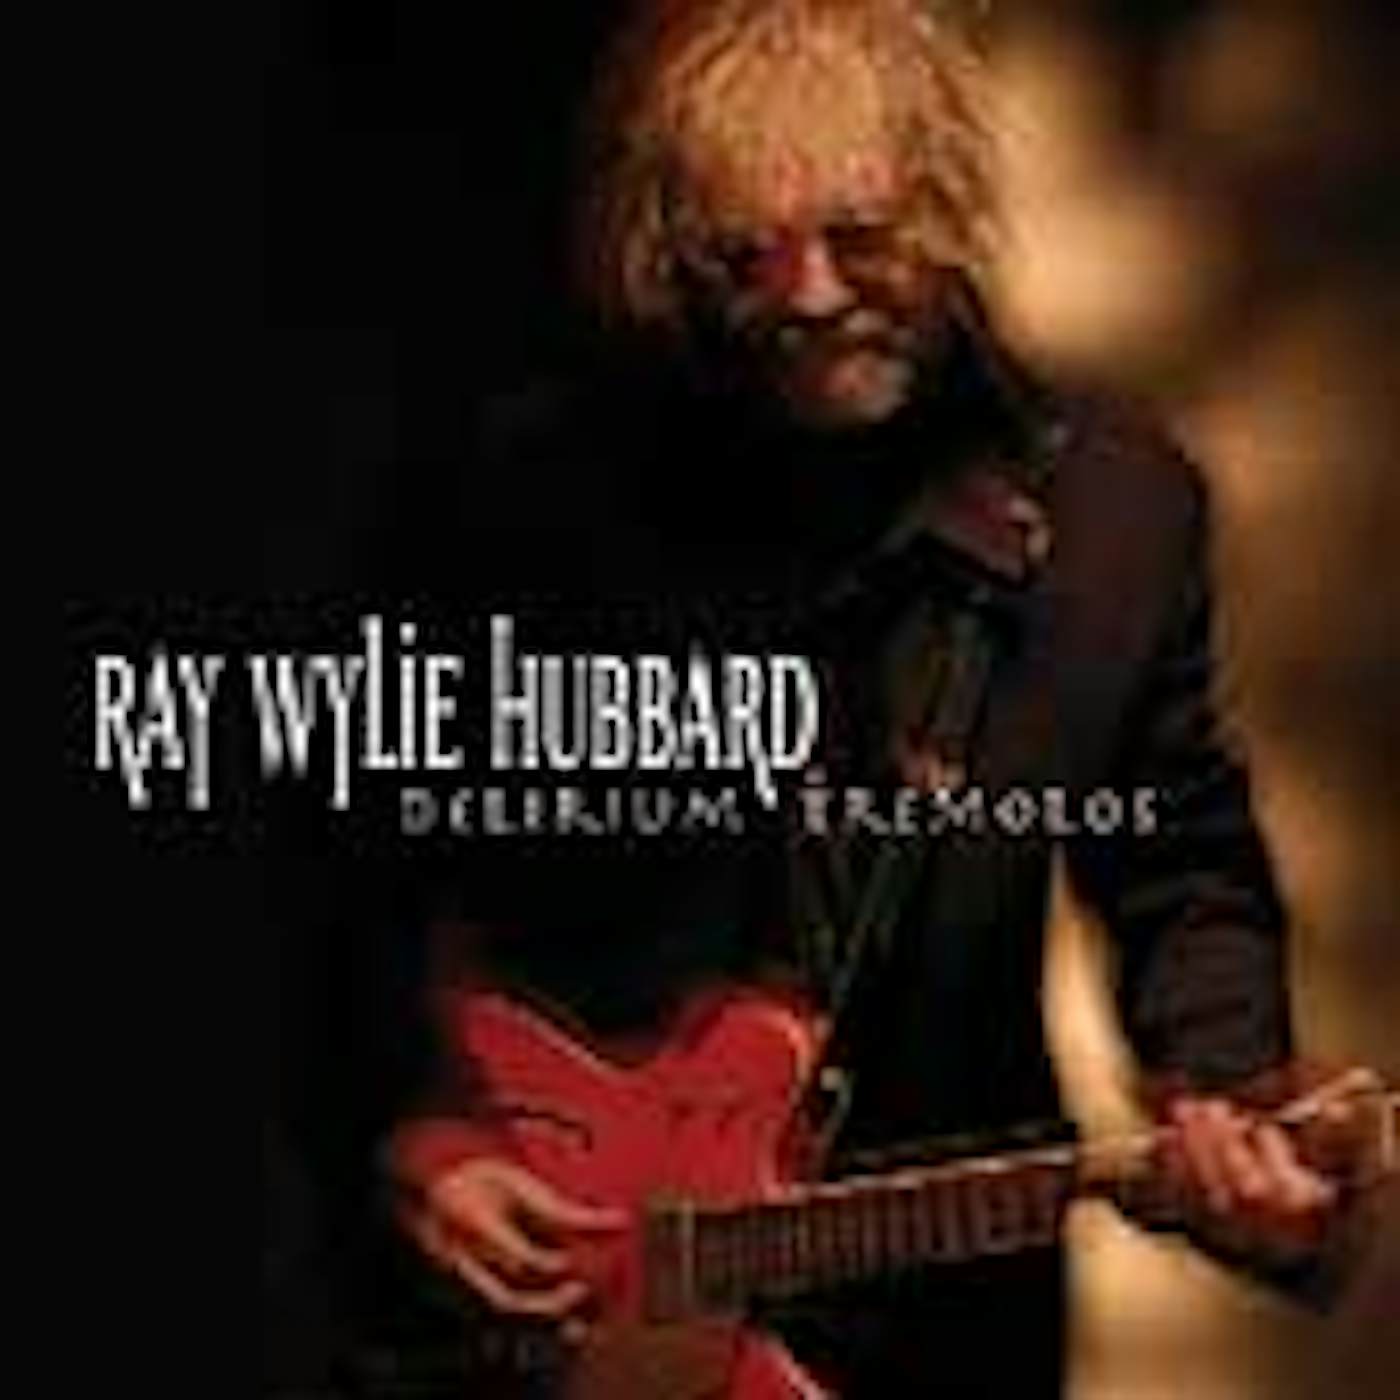 Ray Wylie Hubbard DELIRIUM TREMOLOS CD